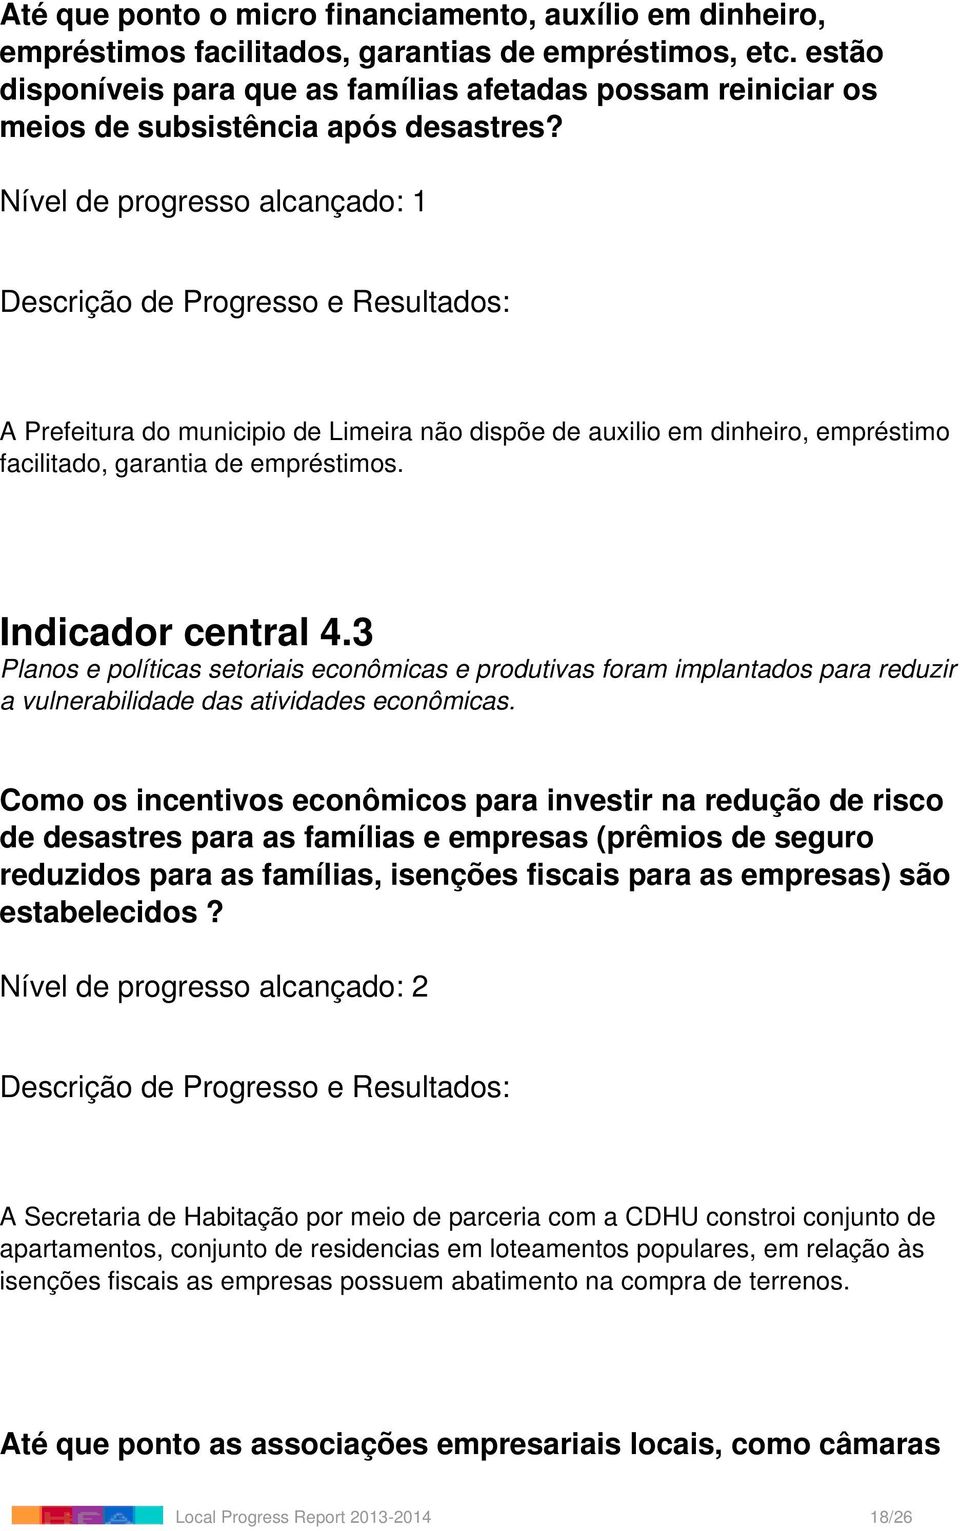 Nível de progresso alcançado: 1 A Prefeitura do municipio de Limeira não dispõe de auxilio em dinheiro, empréstimo facilitado, garantia de empréstimos. Indicador central 4.